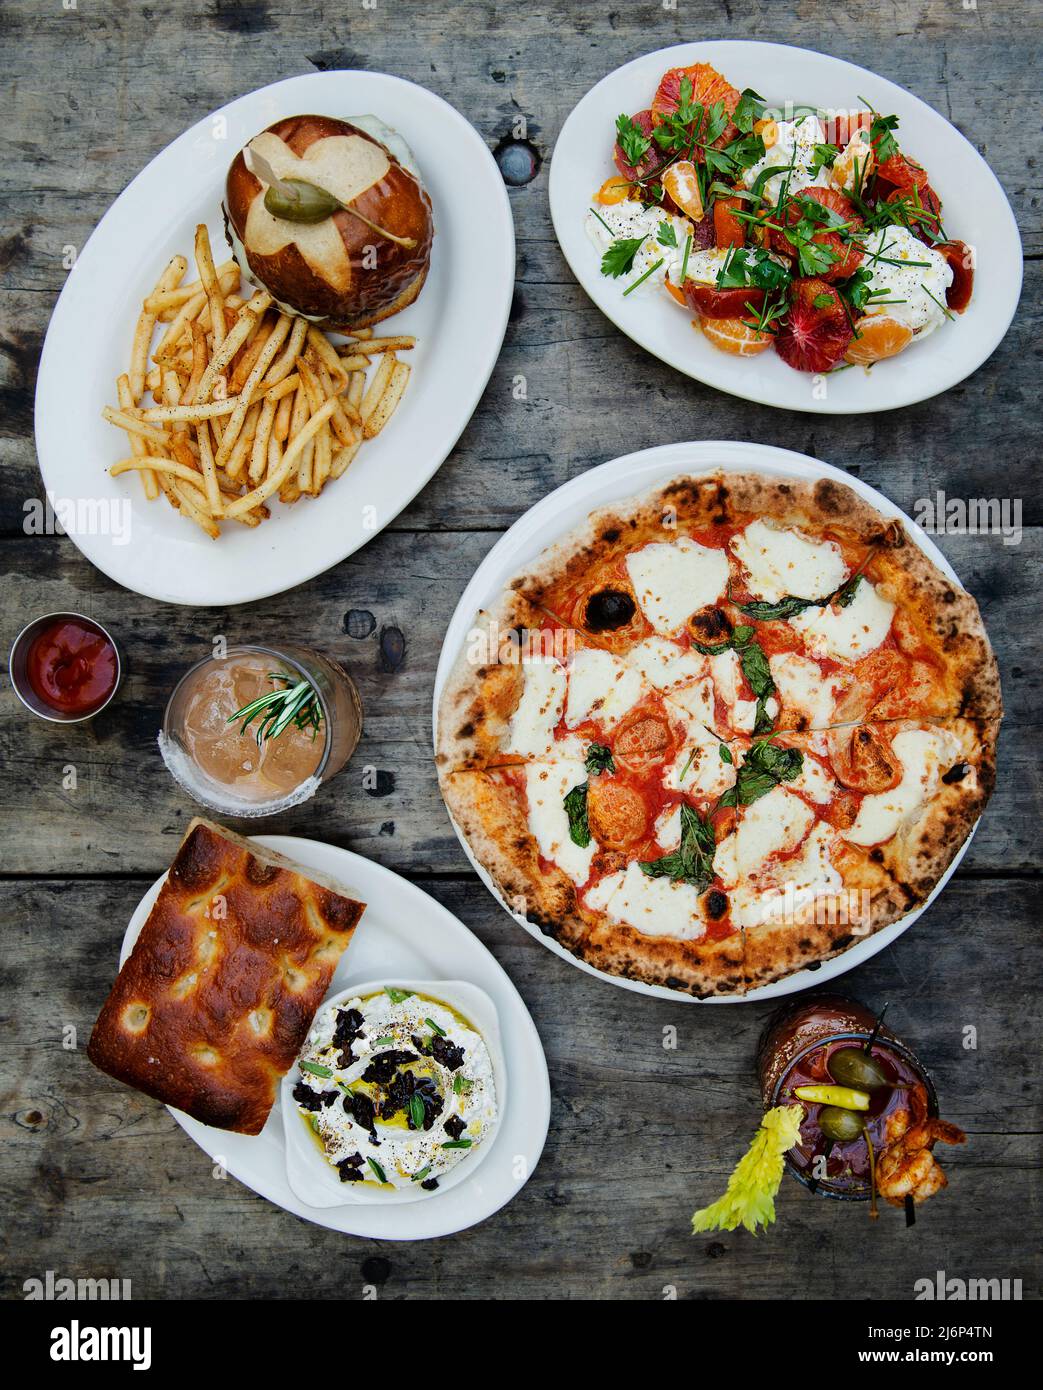 Piatti italiani a base di pizza Margherita, insalata, hamburger focaccia e bevande Foto Stock